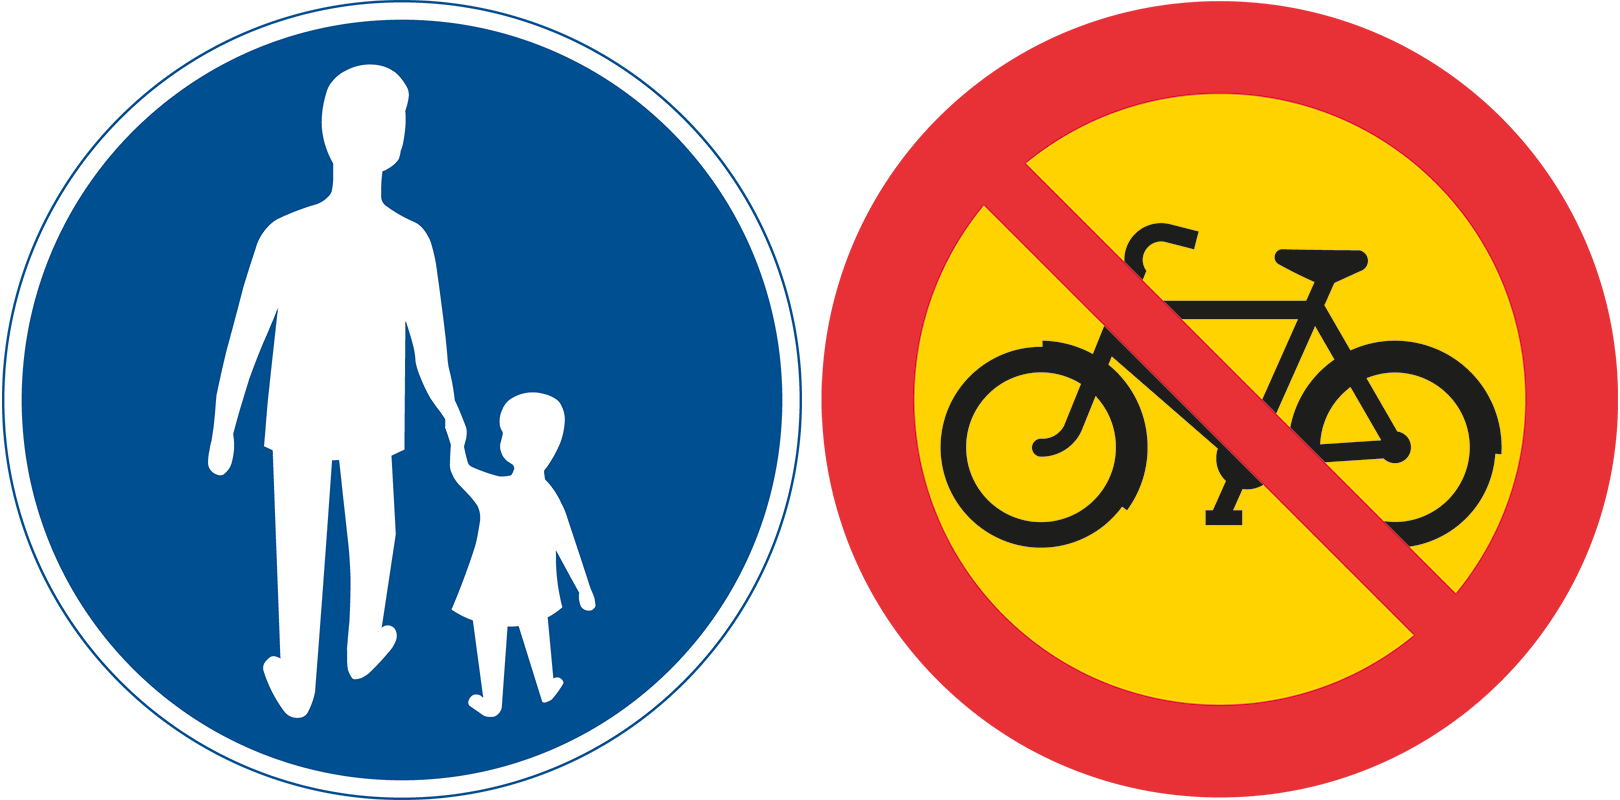 Vägmärken: Påbjuden gångbana och Förbud mot cykel och moped, klass 2